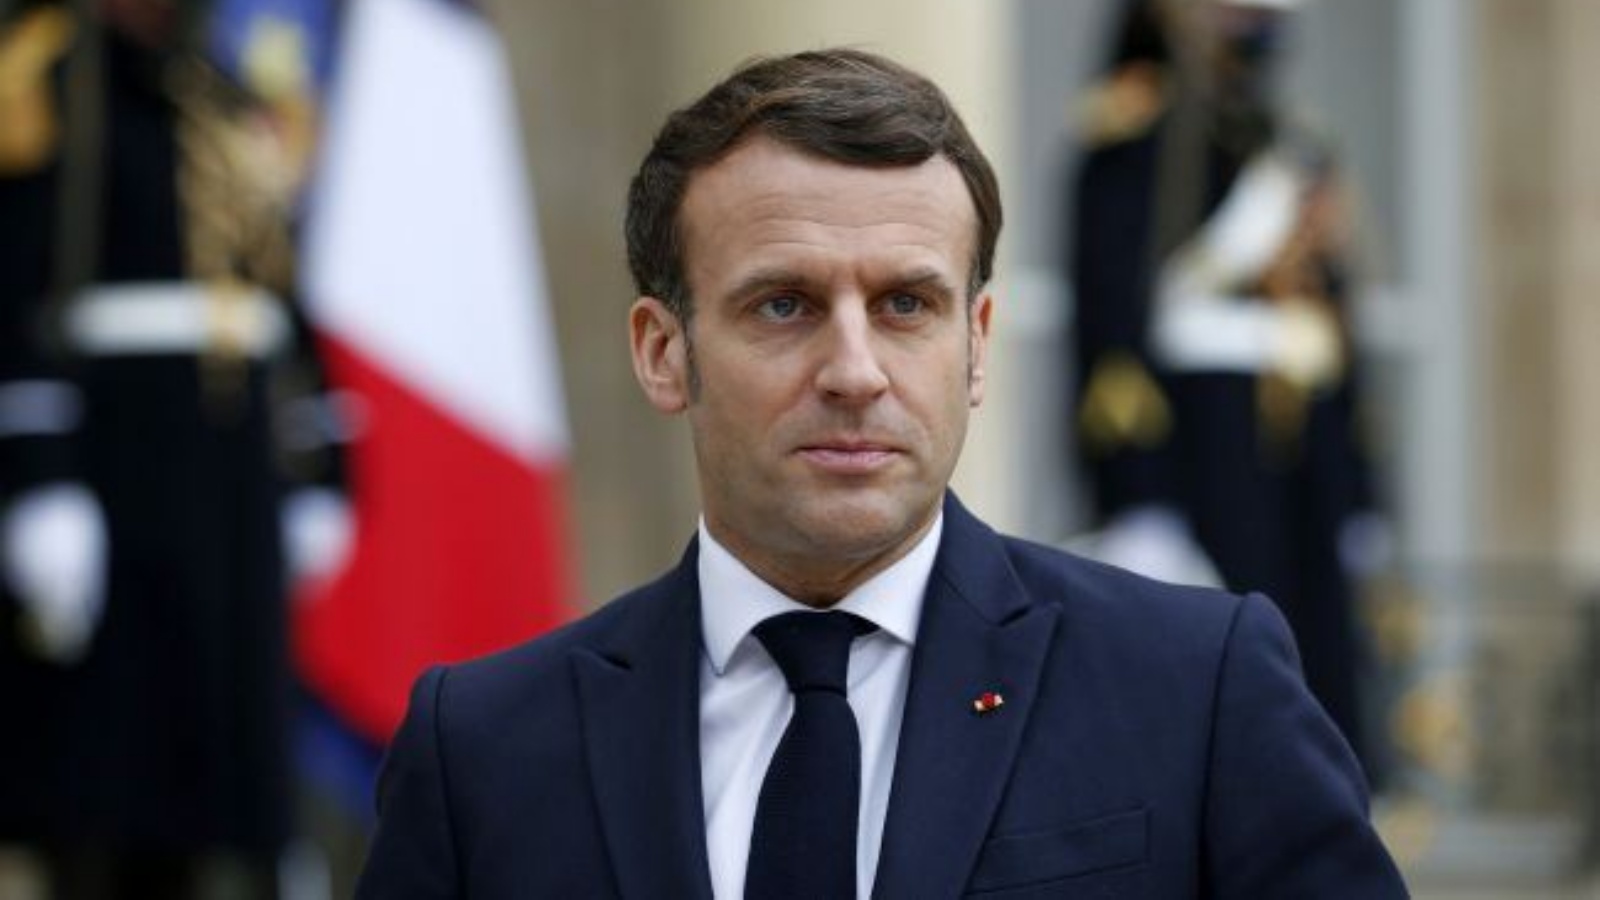 Emmanuel Macron confirma livrarea rapida obuzierelor Caesar Ucrainei